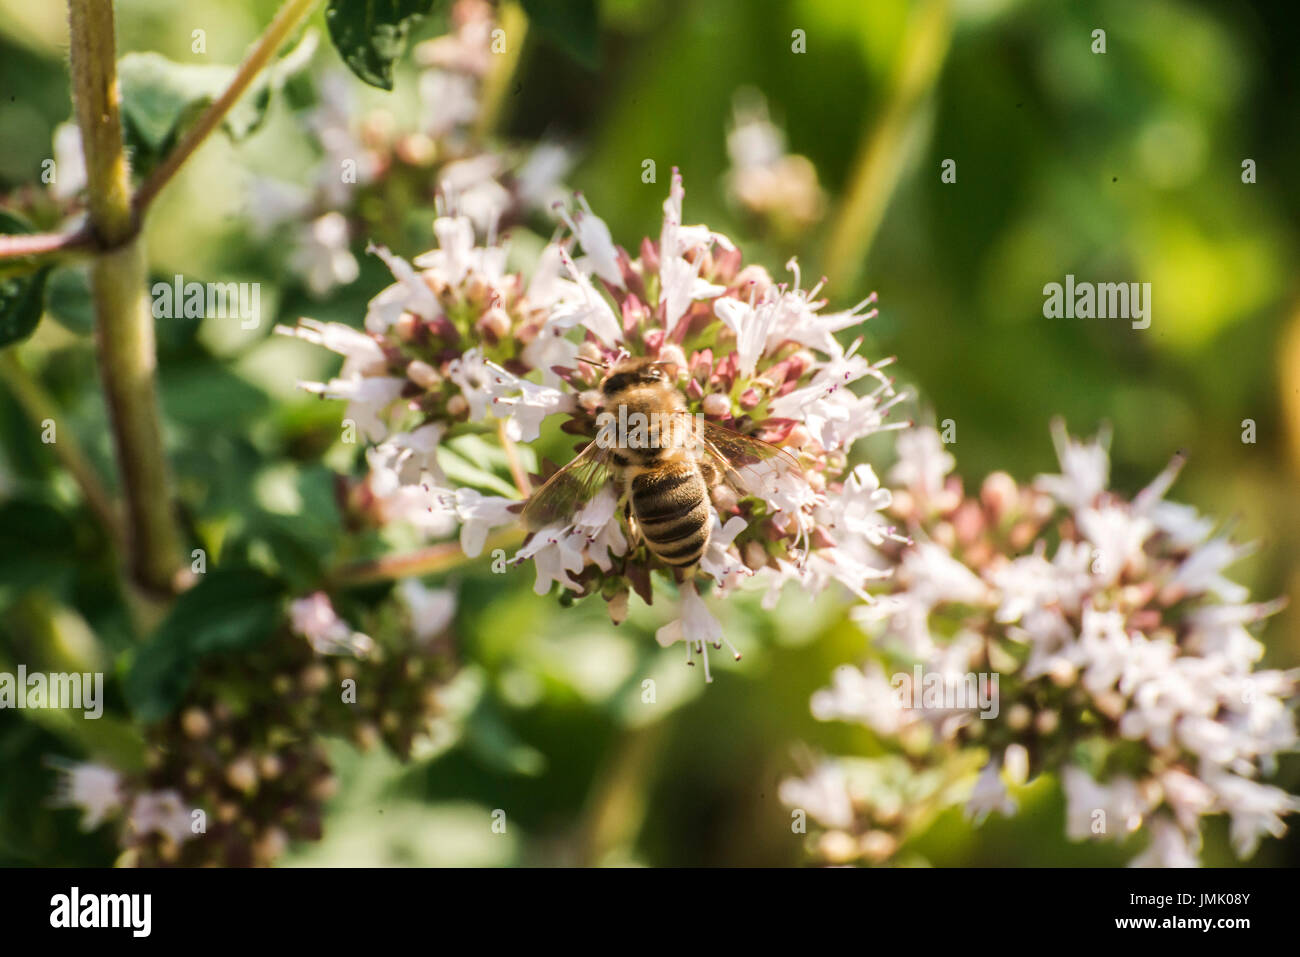 Près d'une abeille de l'extraction sous forme de nectar sur les fleurs d'une plante de l'origan dans un jardin biologique Banque D'Images